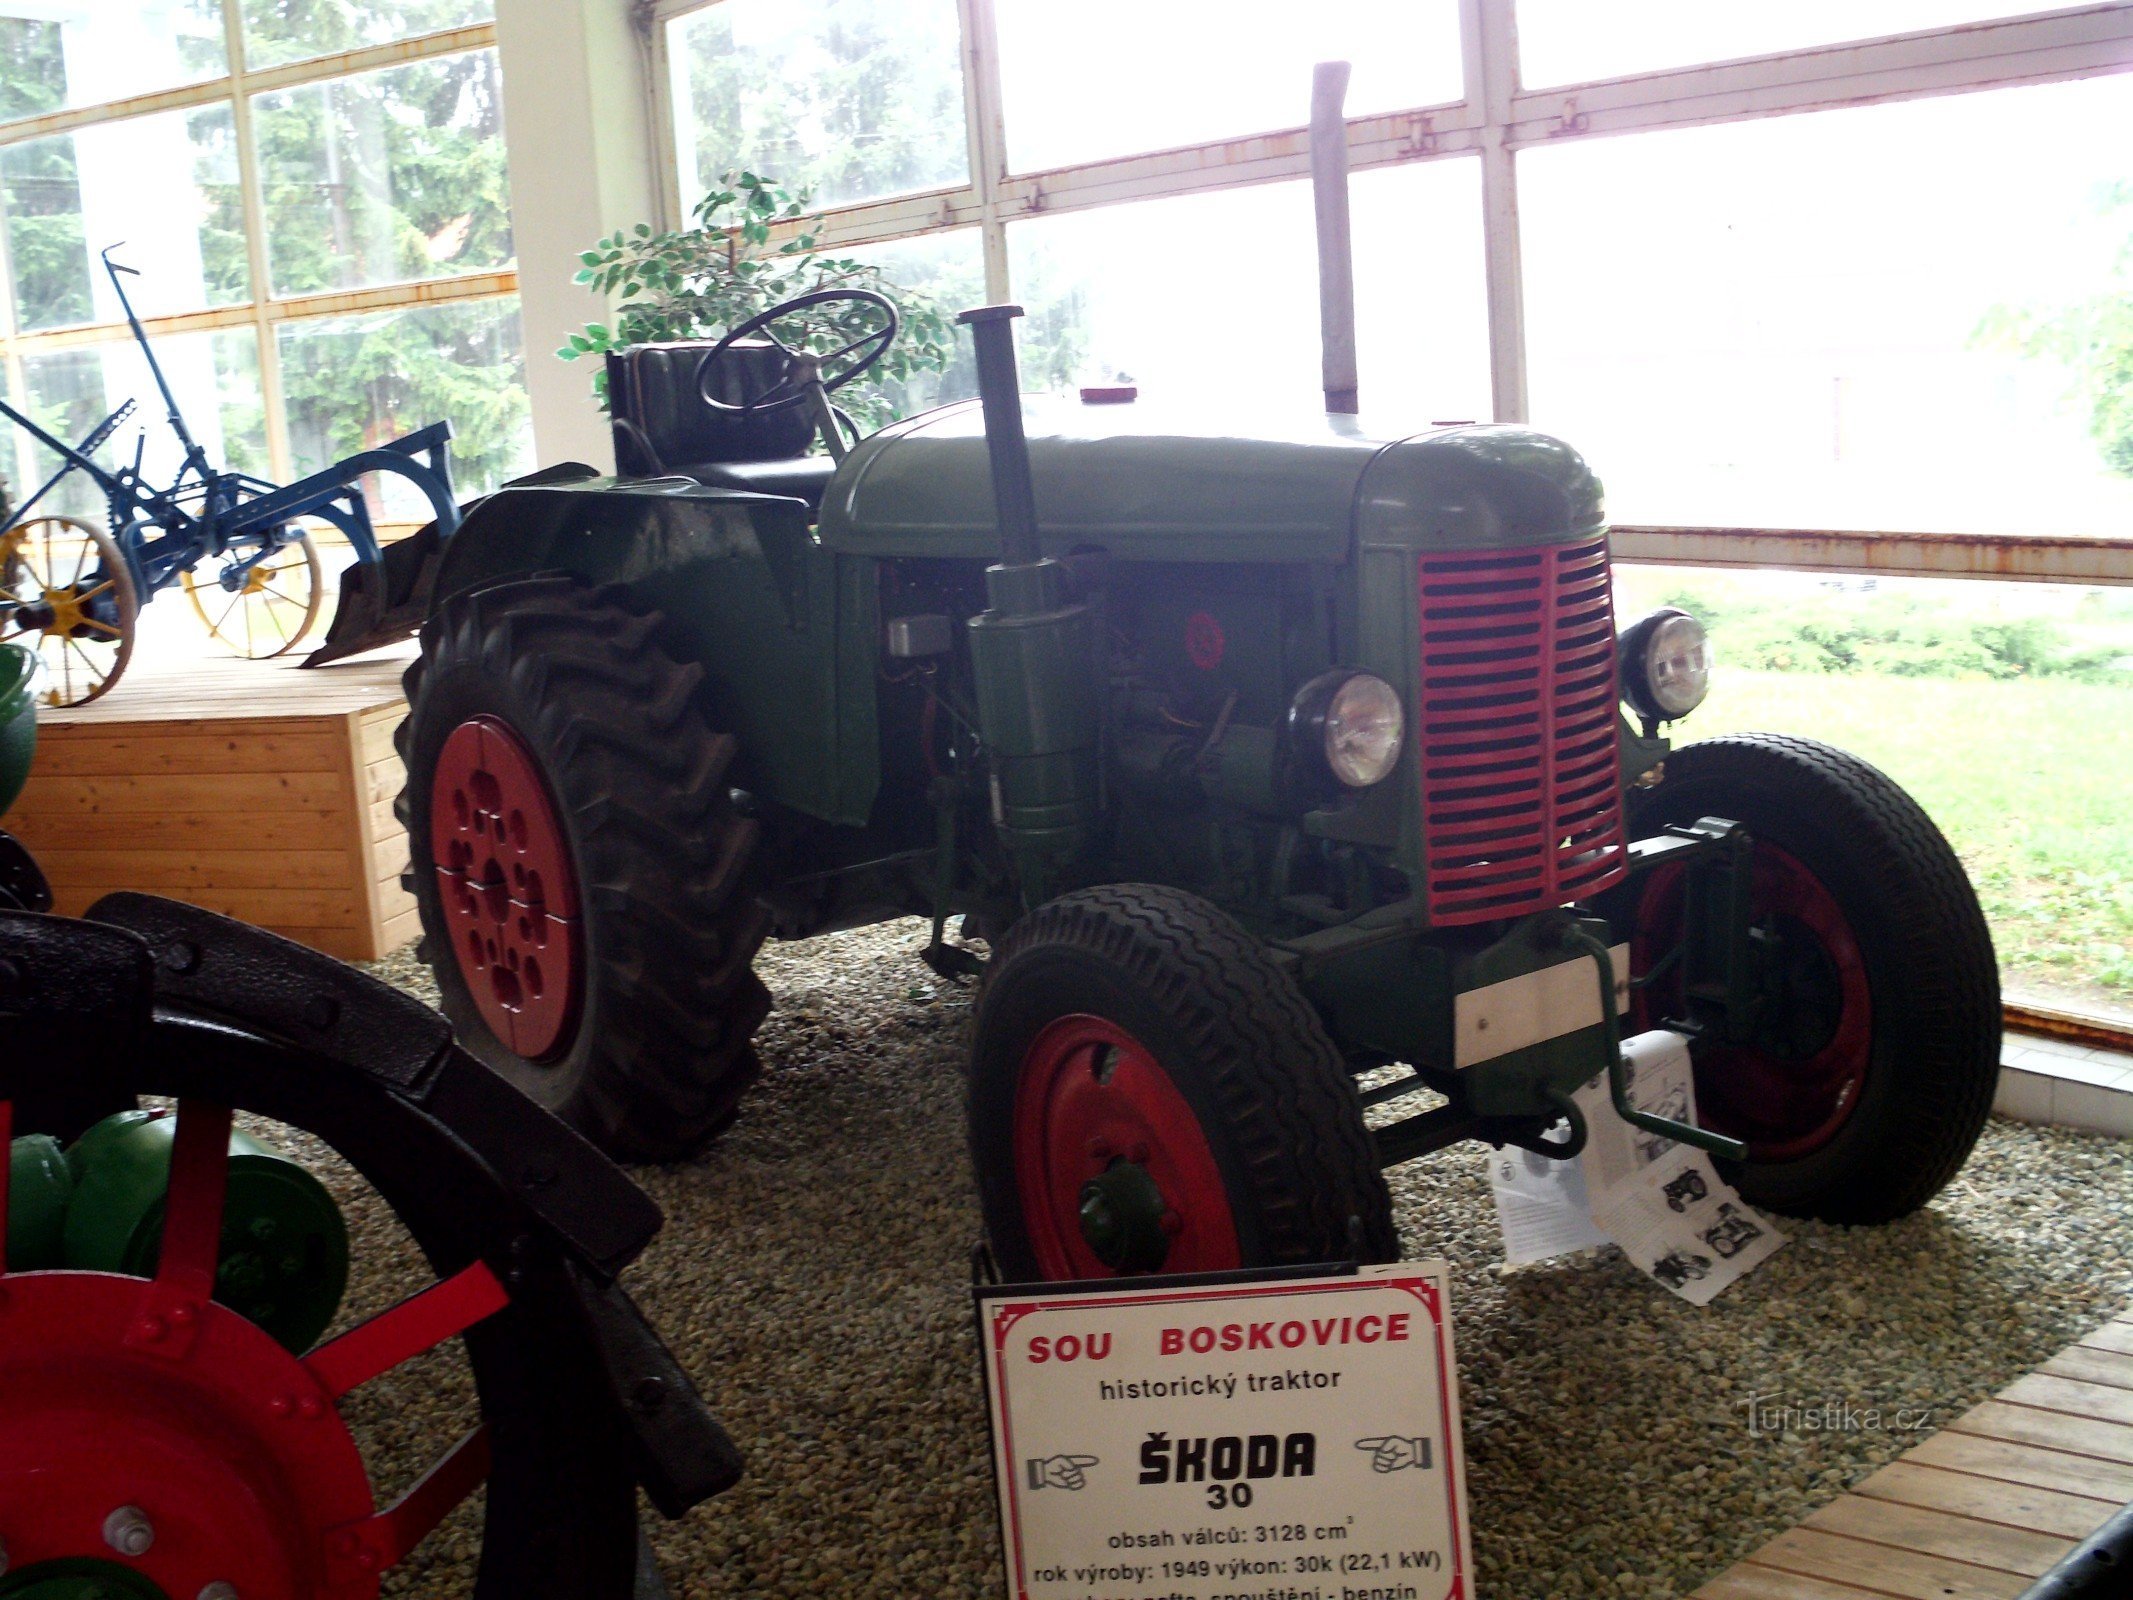 シュコダ 30 トラクターは、第二次世界大戦後の農業の集団化において重要な役割を果たしました。 世界大戦。